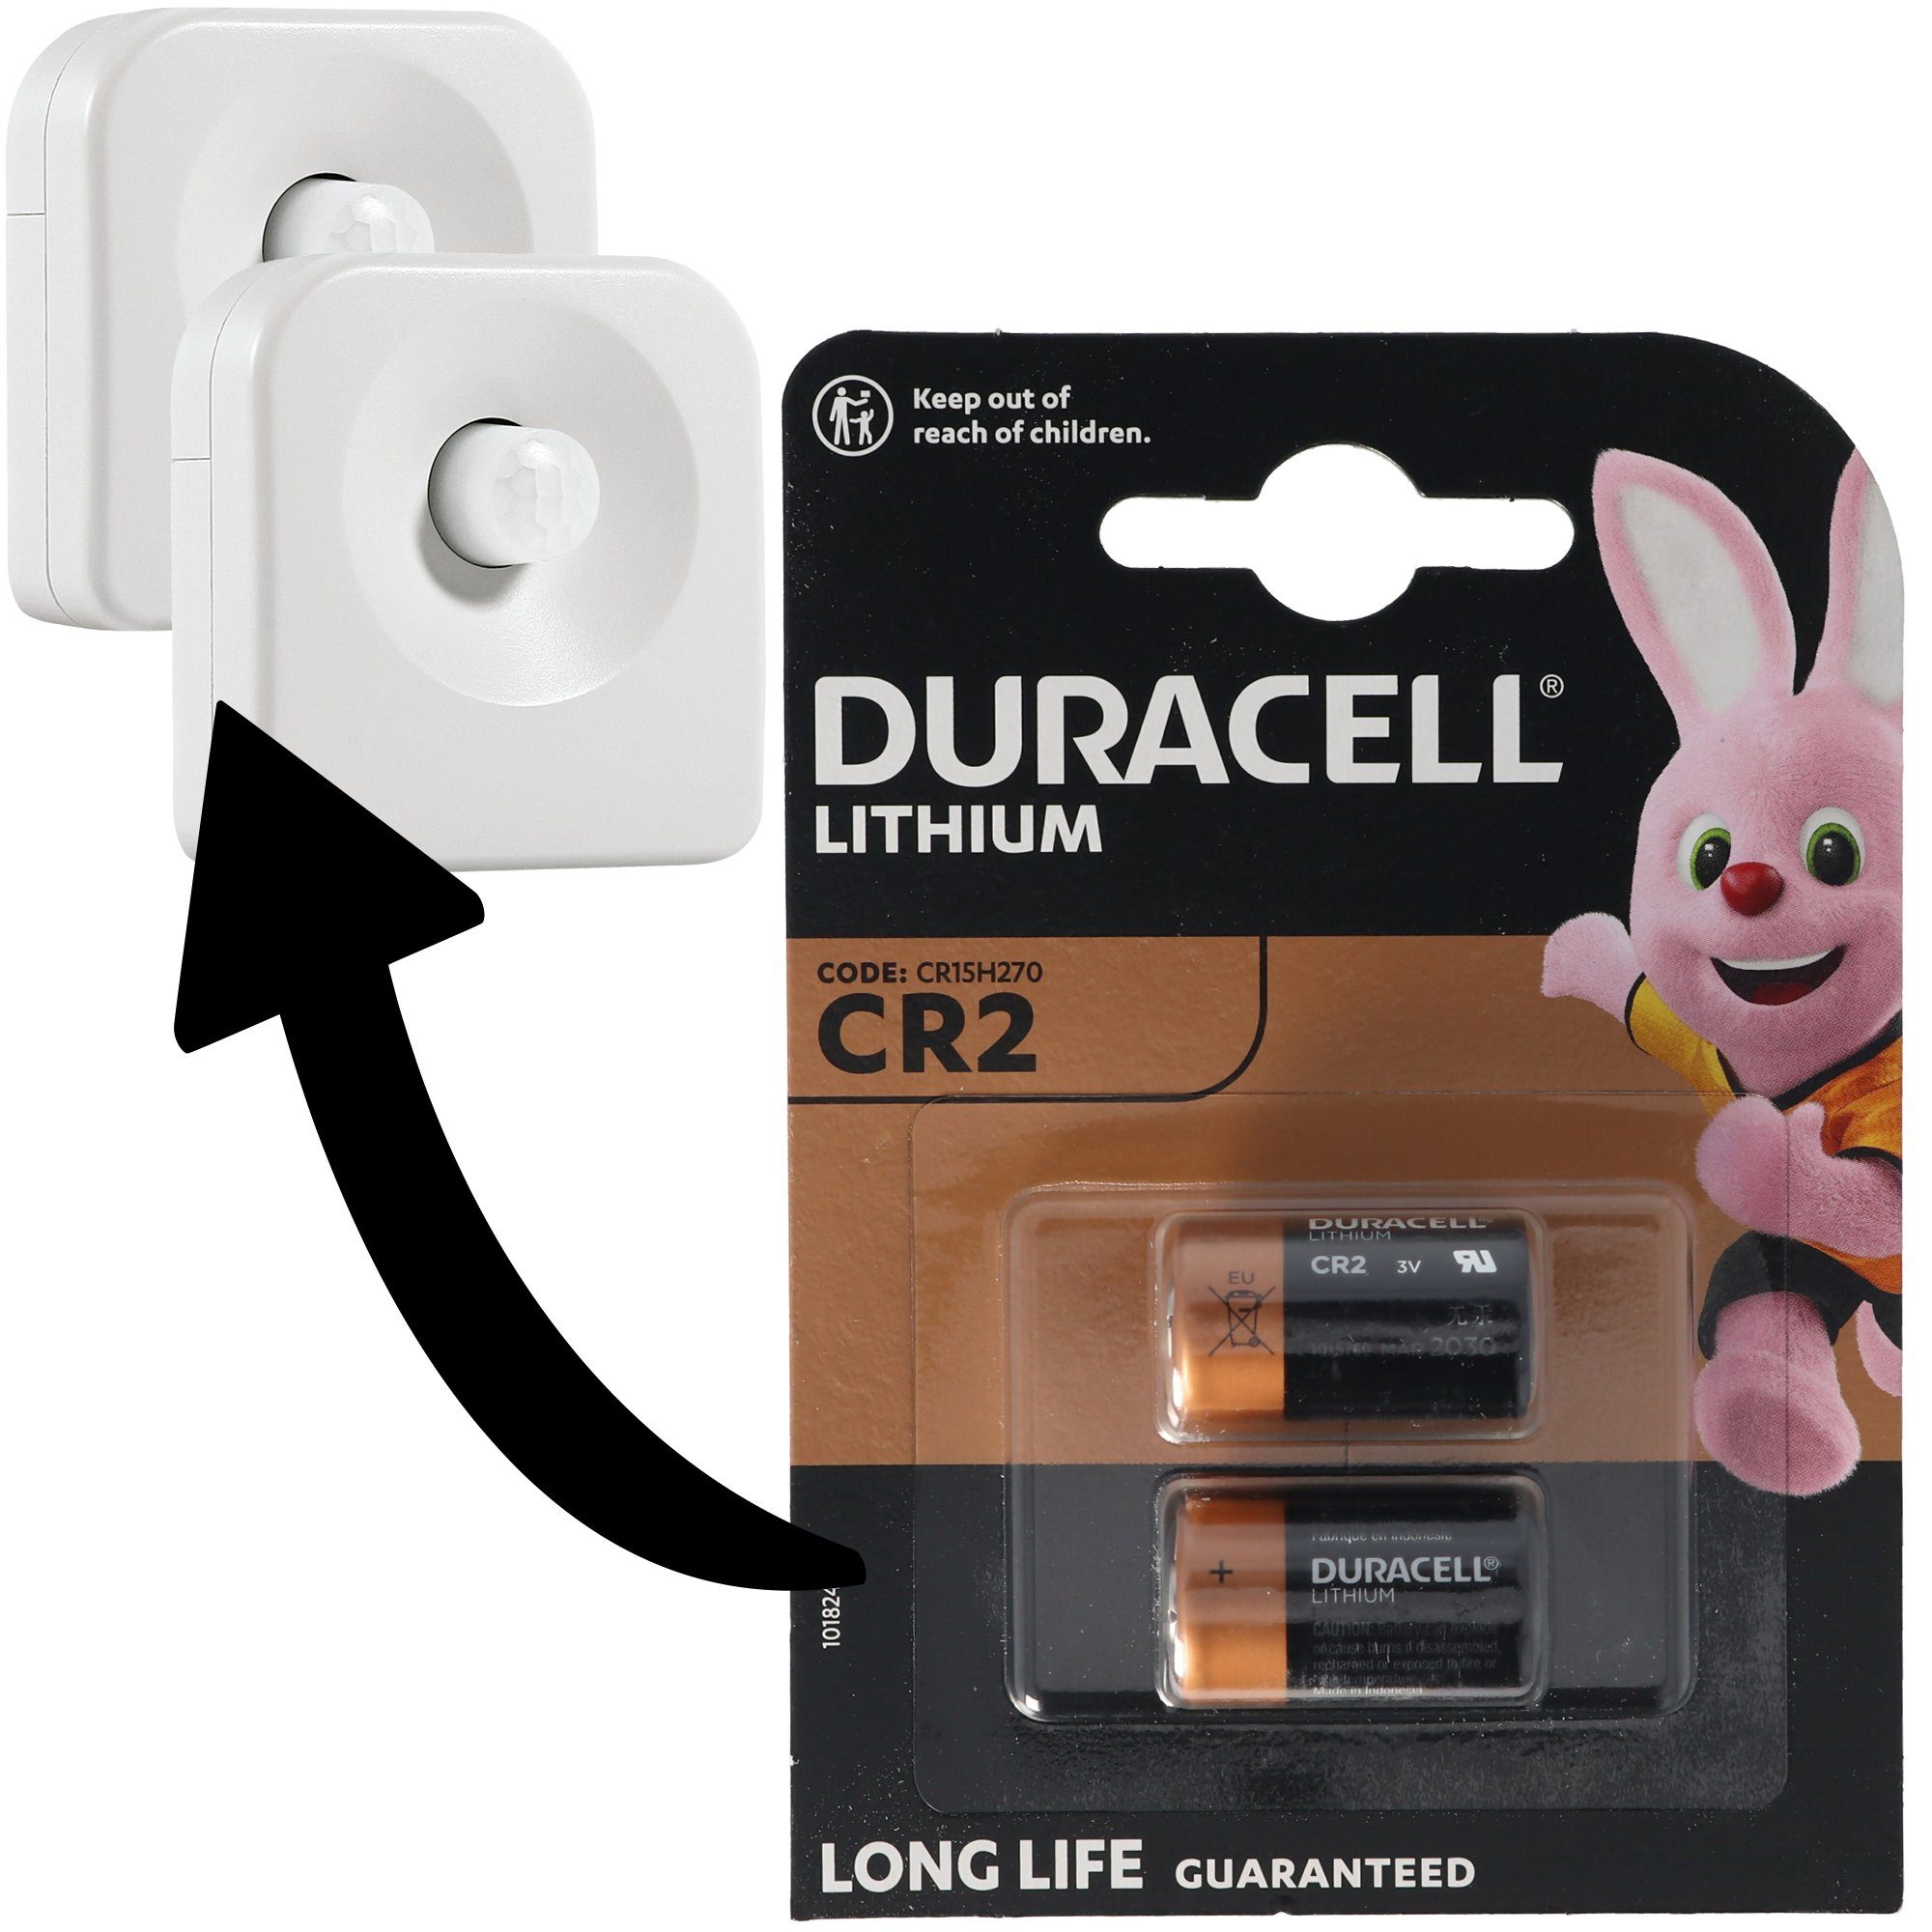 Duracell Batterien passend für 2 Ledvance SMART+ Motion Sensor, Osram SMART+ M Batterie, (3,0 V)